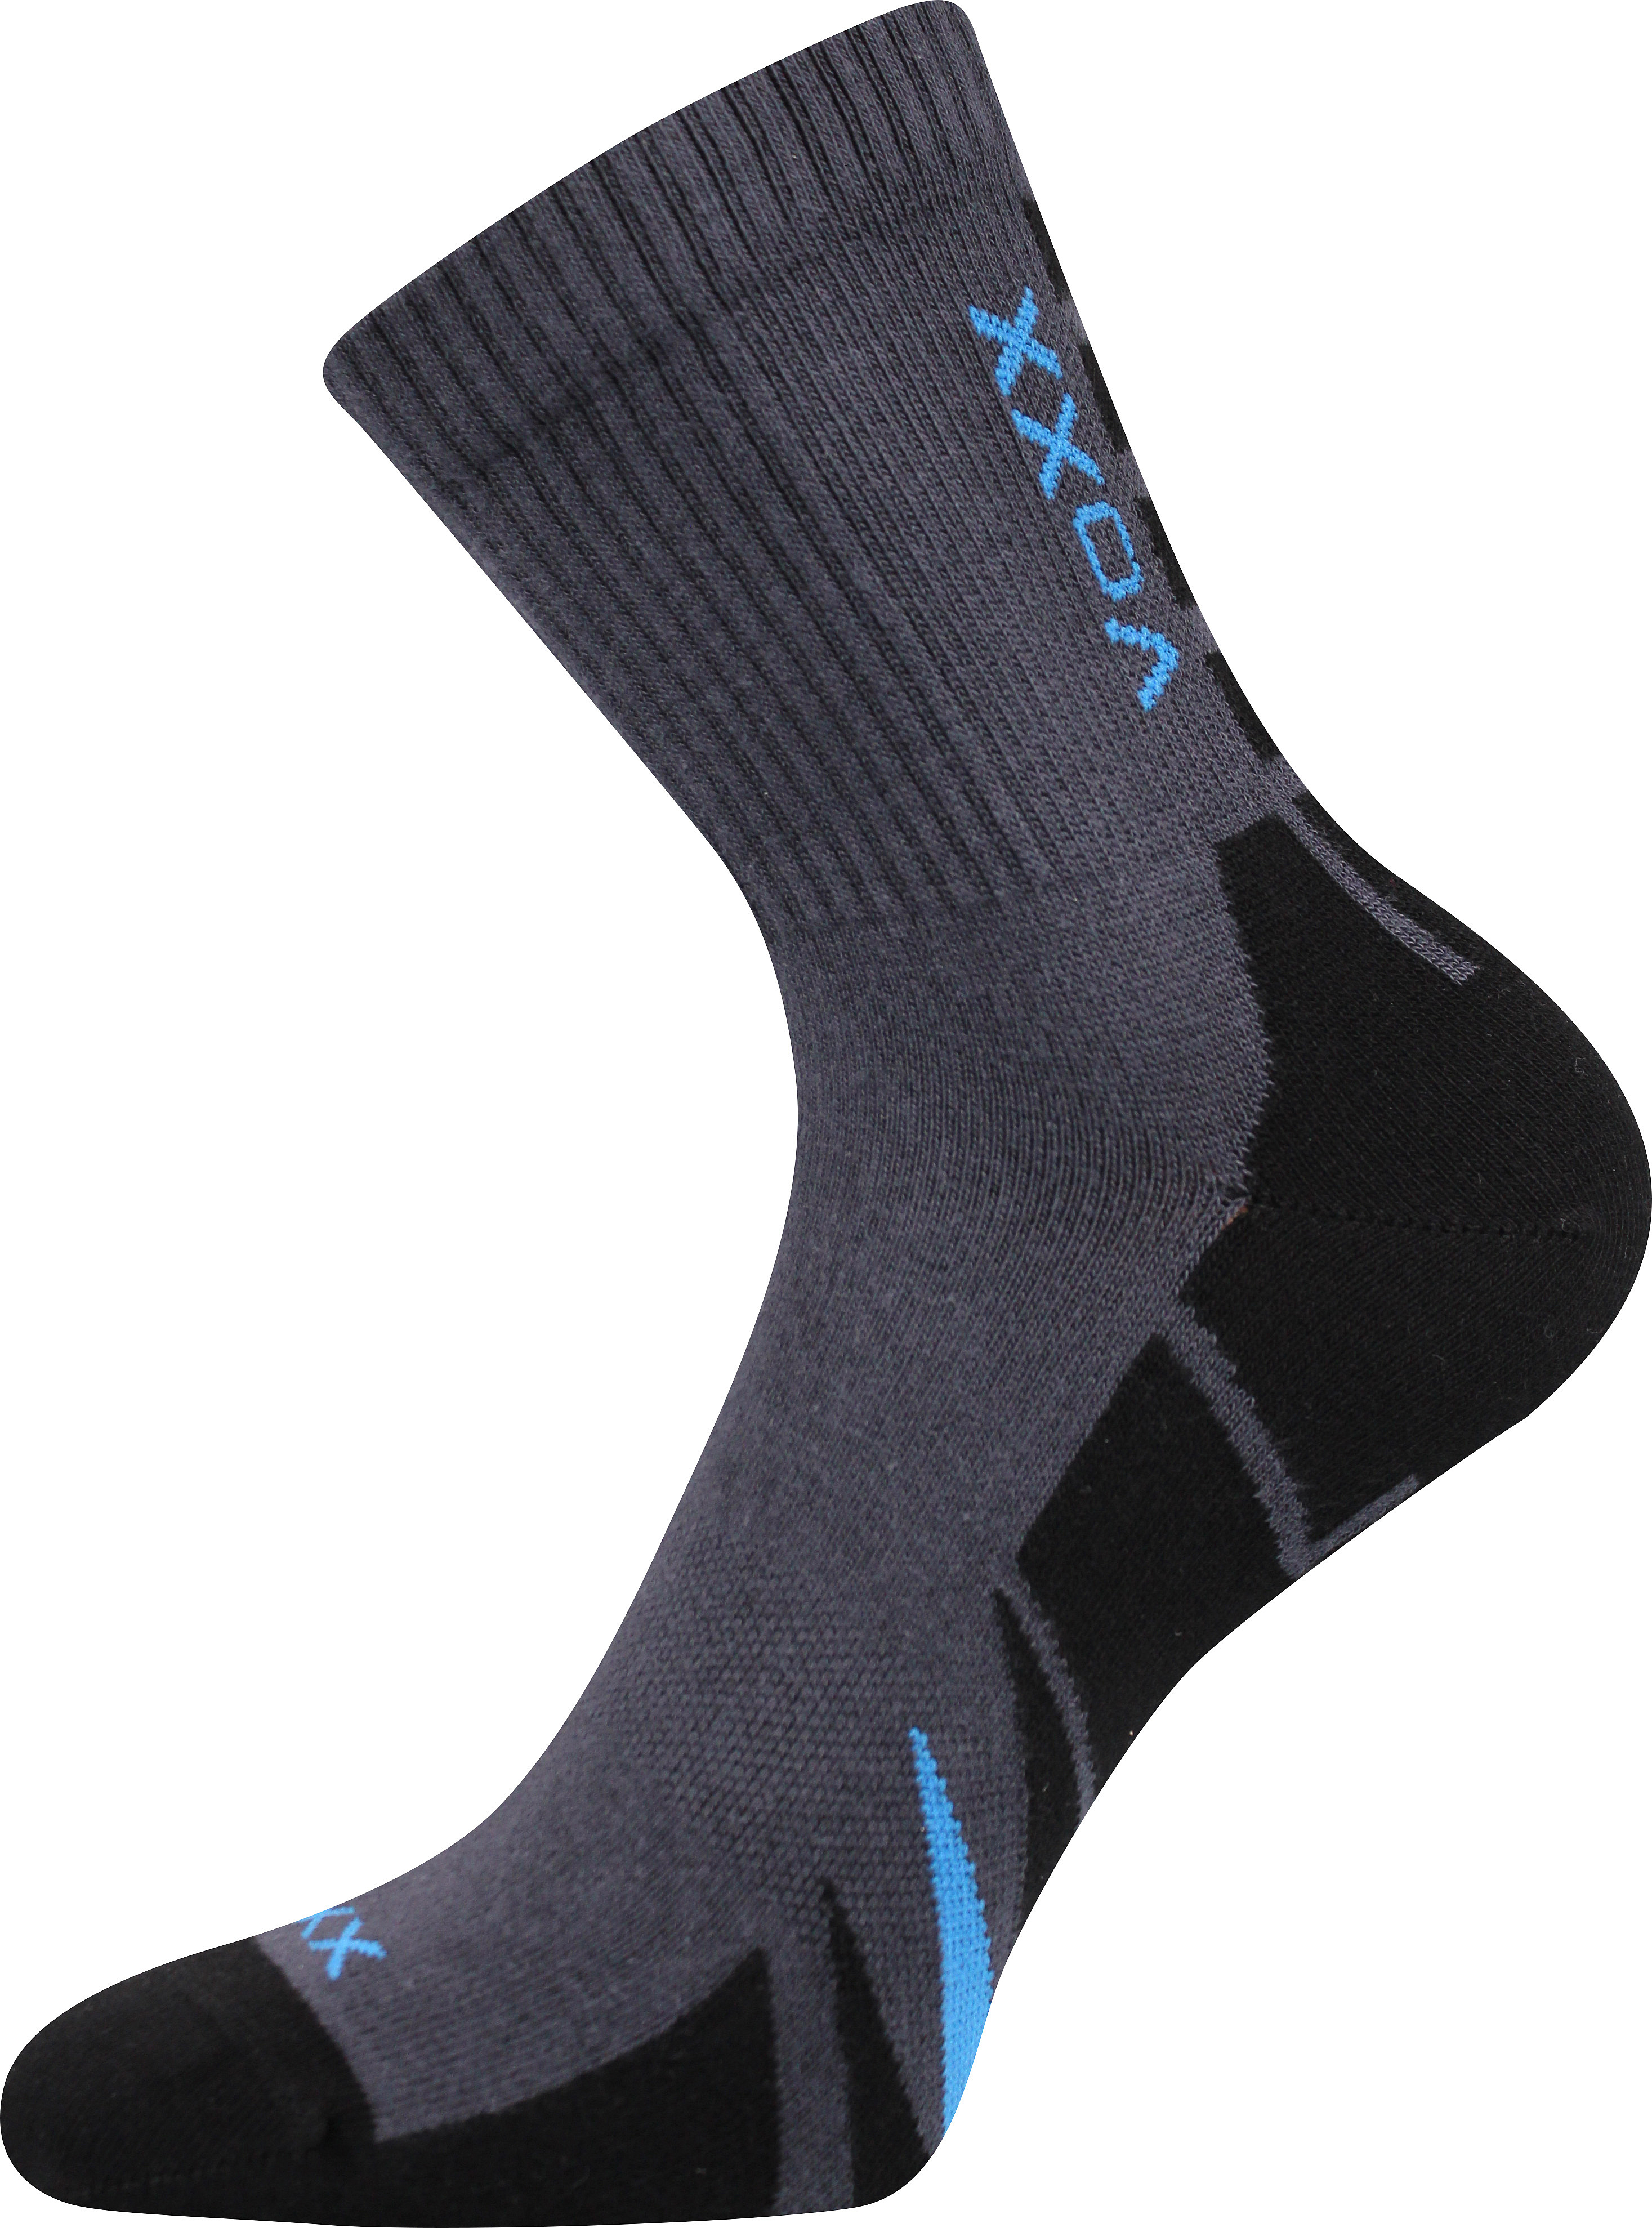 Ponožky sportovní Voxx Hermes - tmavě šedé-černé, 39-42